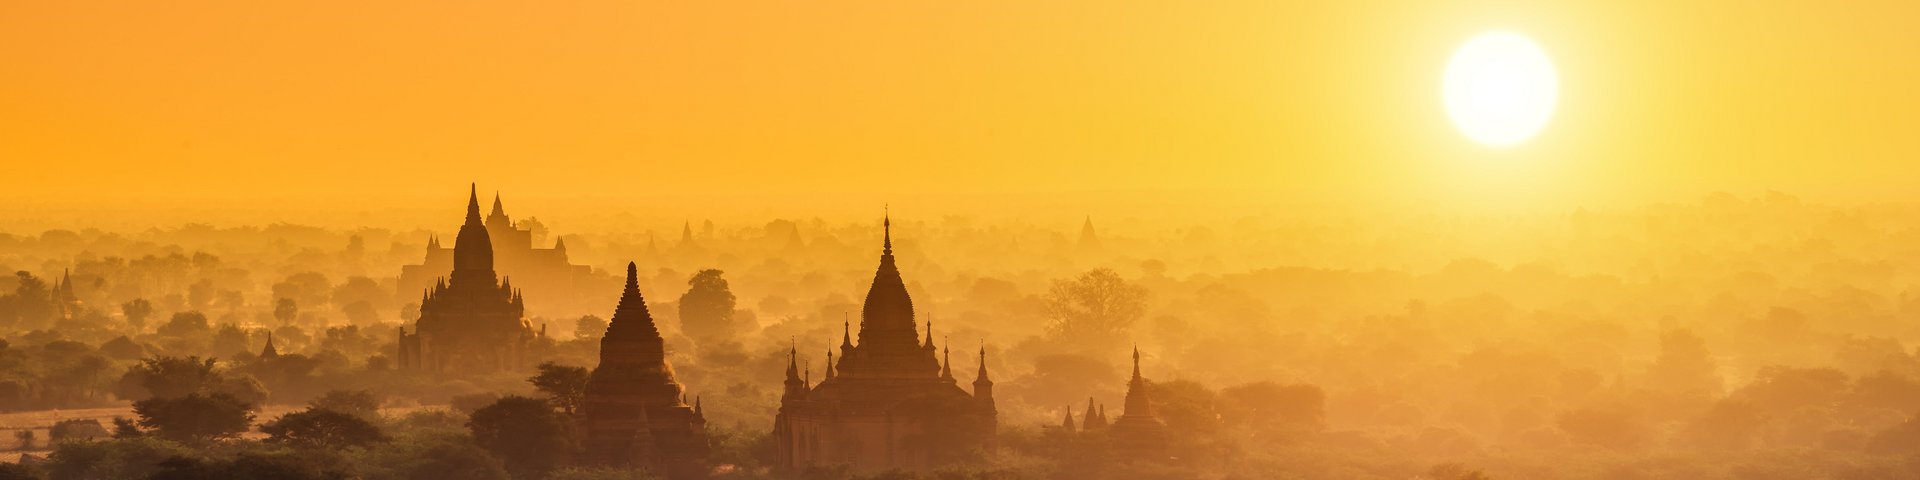 Sonnenuntergang über den Tempeln von Bagan in Myanmar